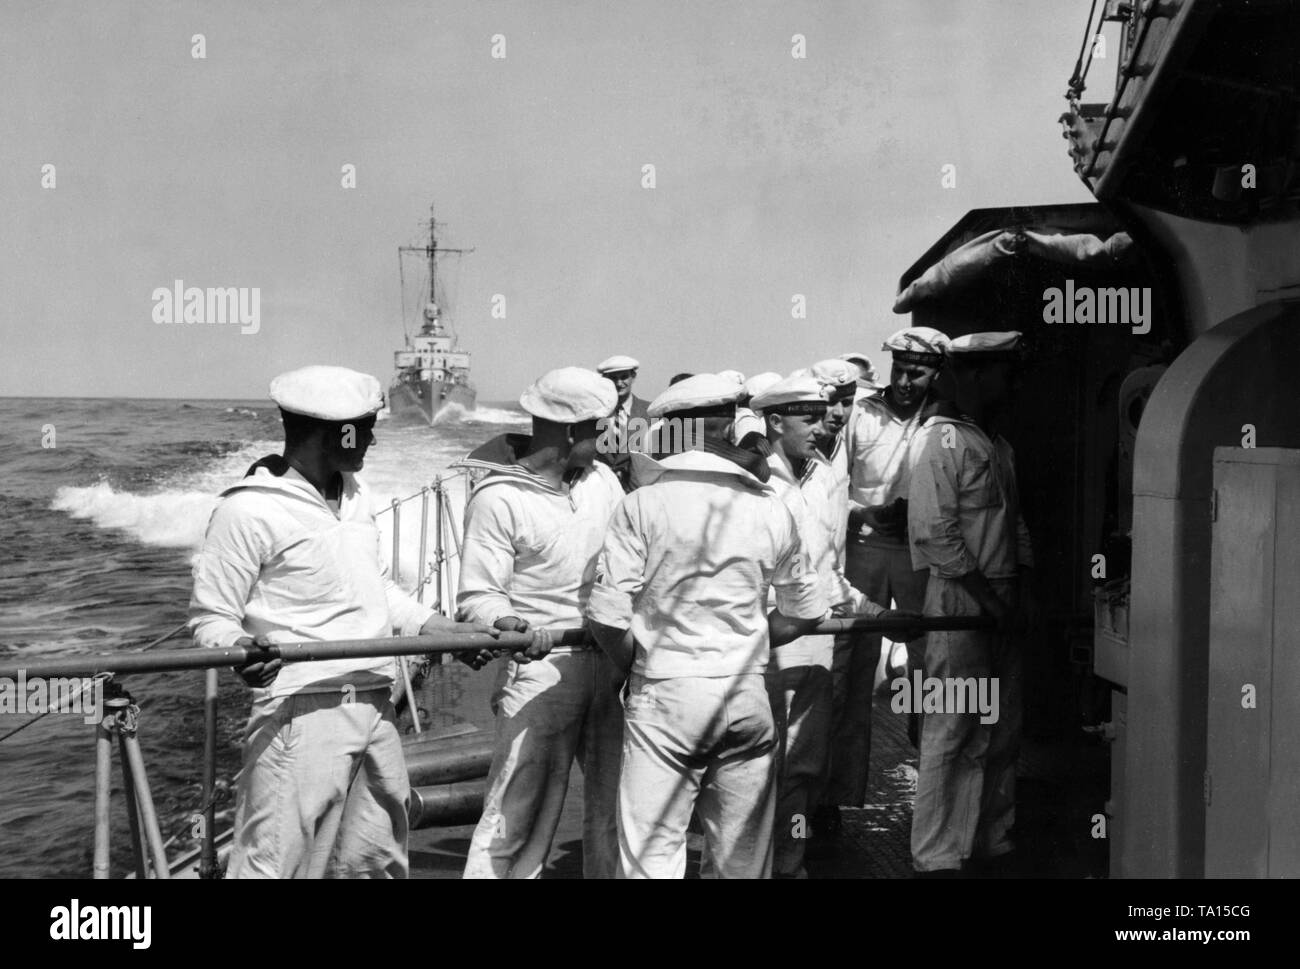 Im August 1938 verschiedene Schießwesen Übungen fand im Rahmen des Seemanöver auf der Ostsee. Das Bild zeigt die Mitglieder der Besatzung der Zerstörer Z 7 Hermann Schoemann' während der Reinigung der Pistole Kanonen. Stockfoto